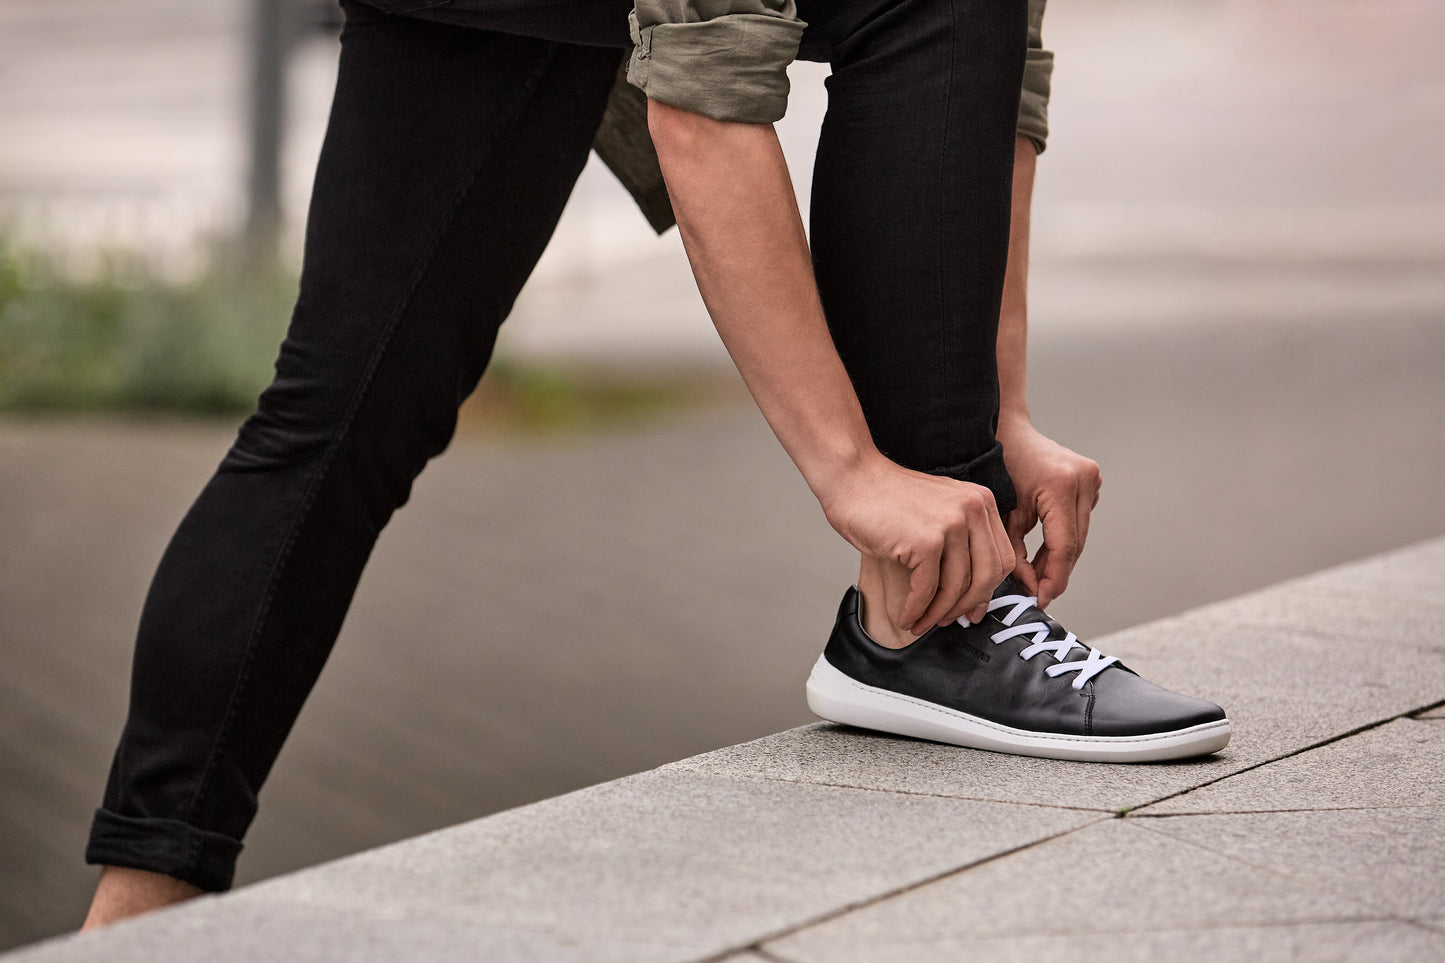 Mærkbare Walker barfods sneakers til kvinder og mænd i farven black / white, lifestyle